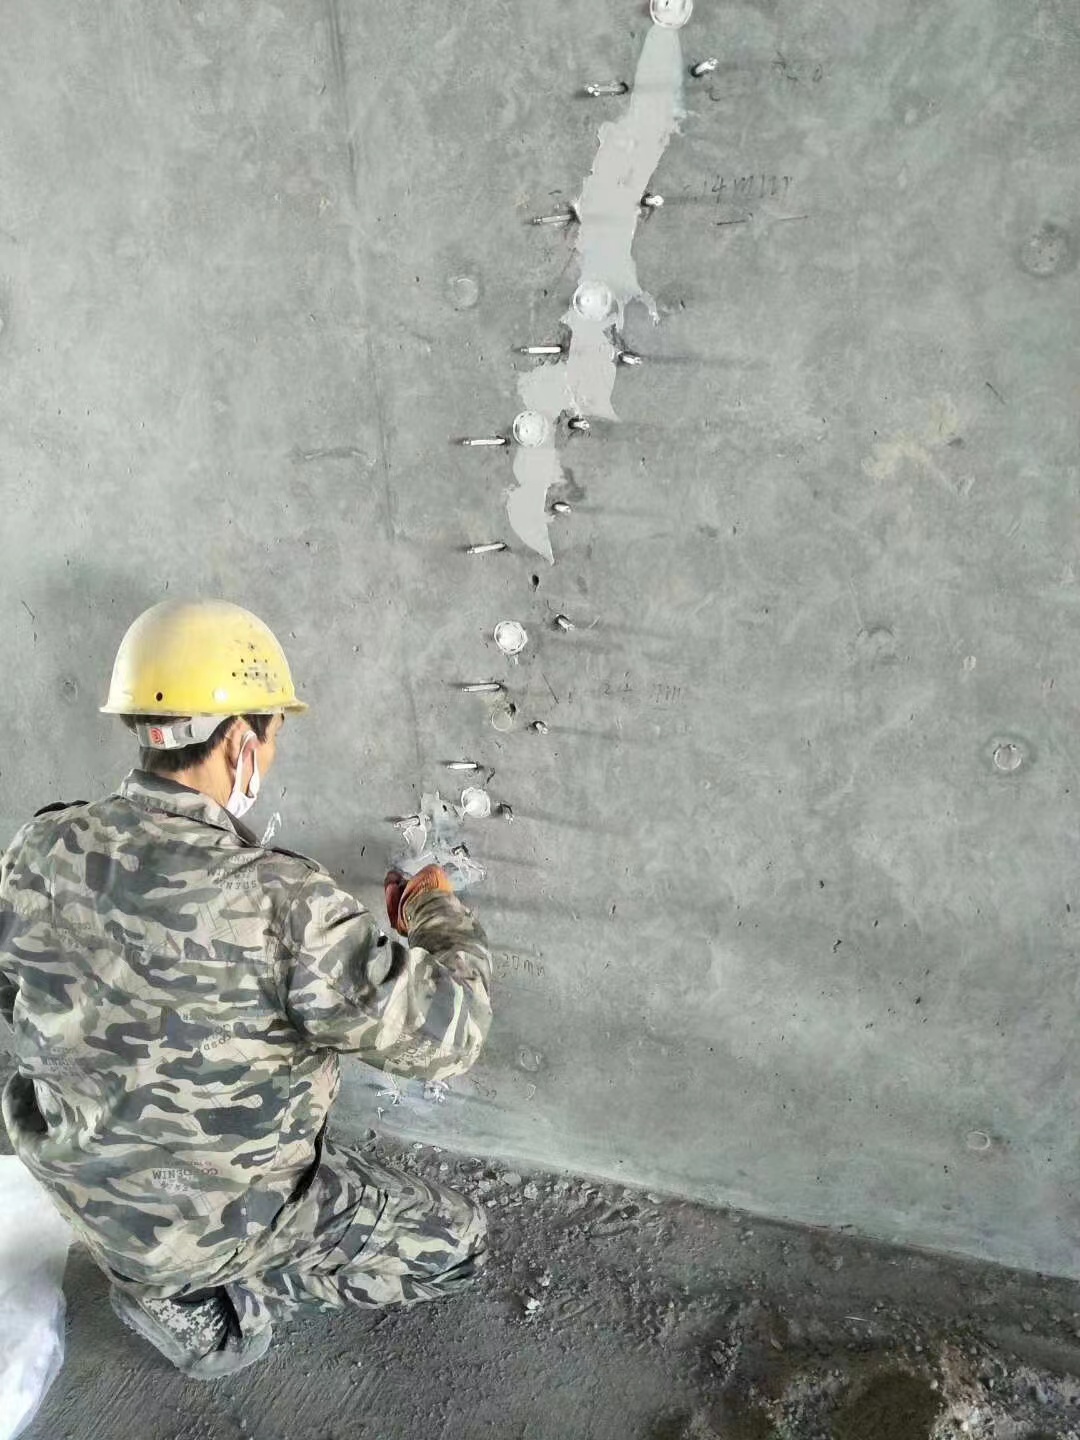 康保混凝土楼板裂缝加固施工的方案